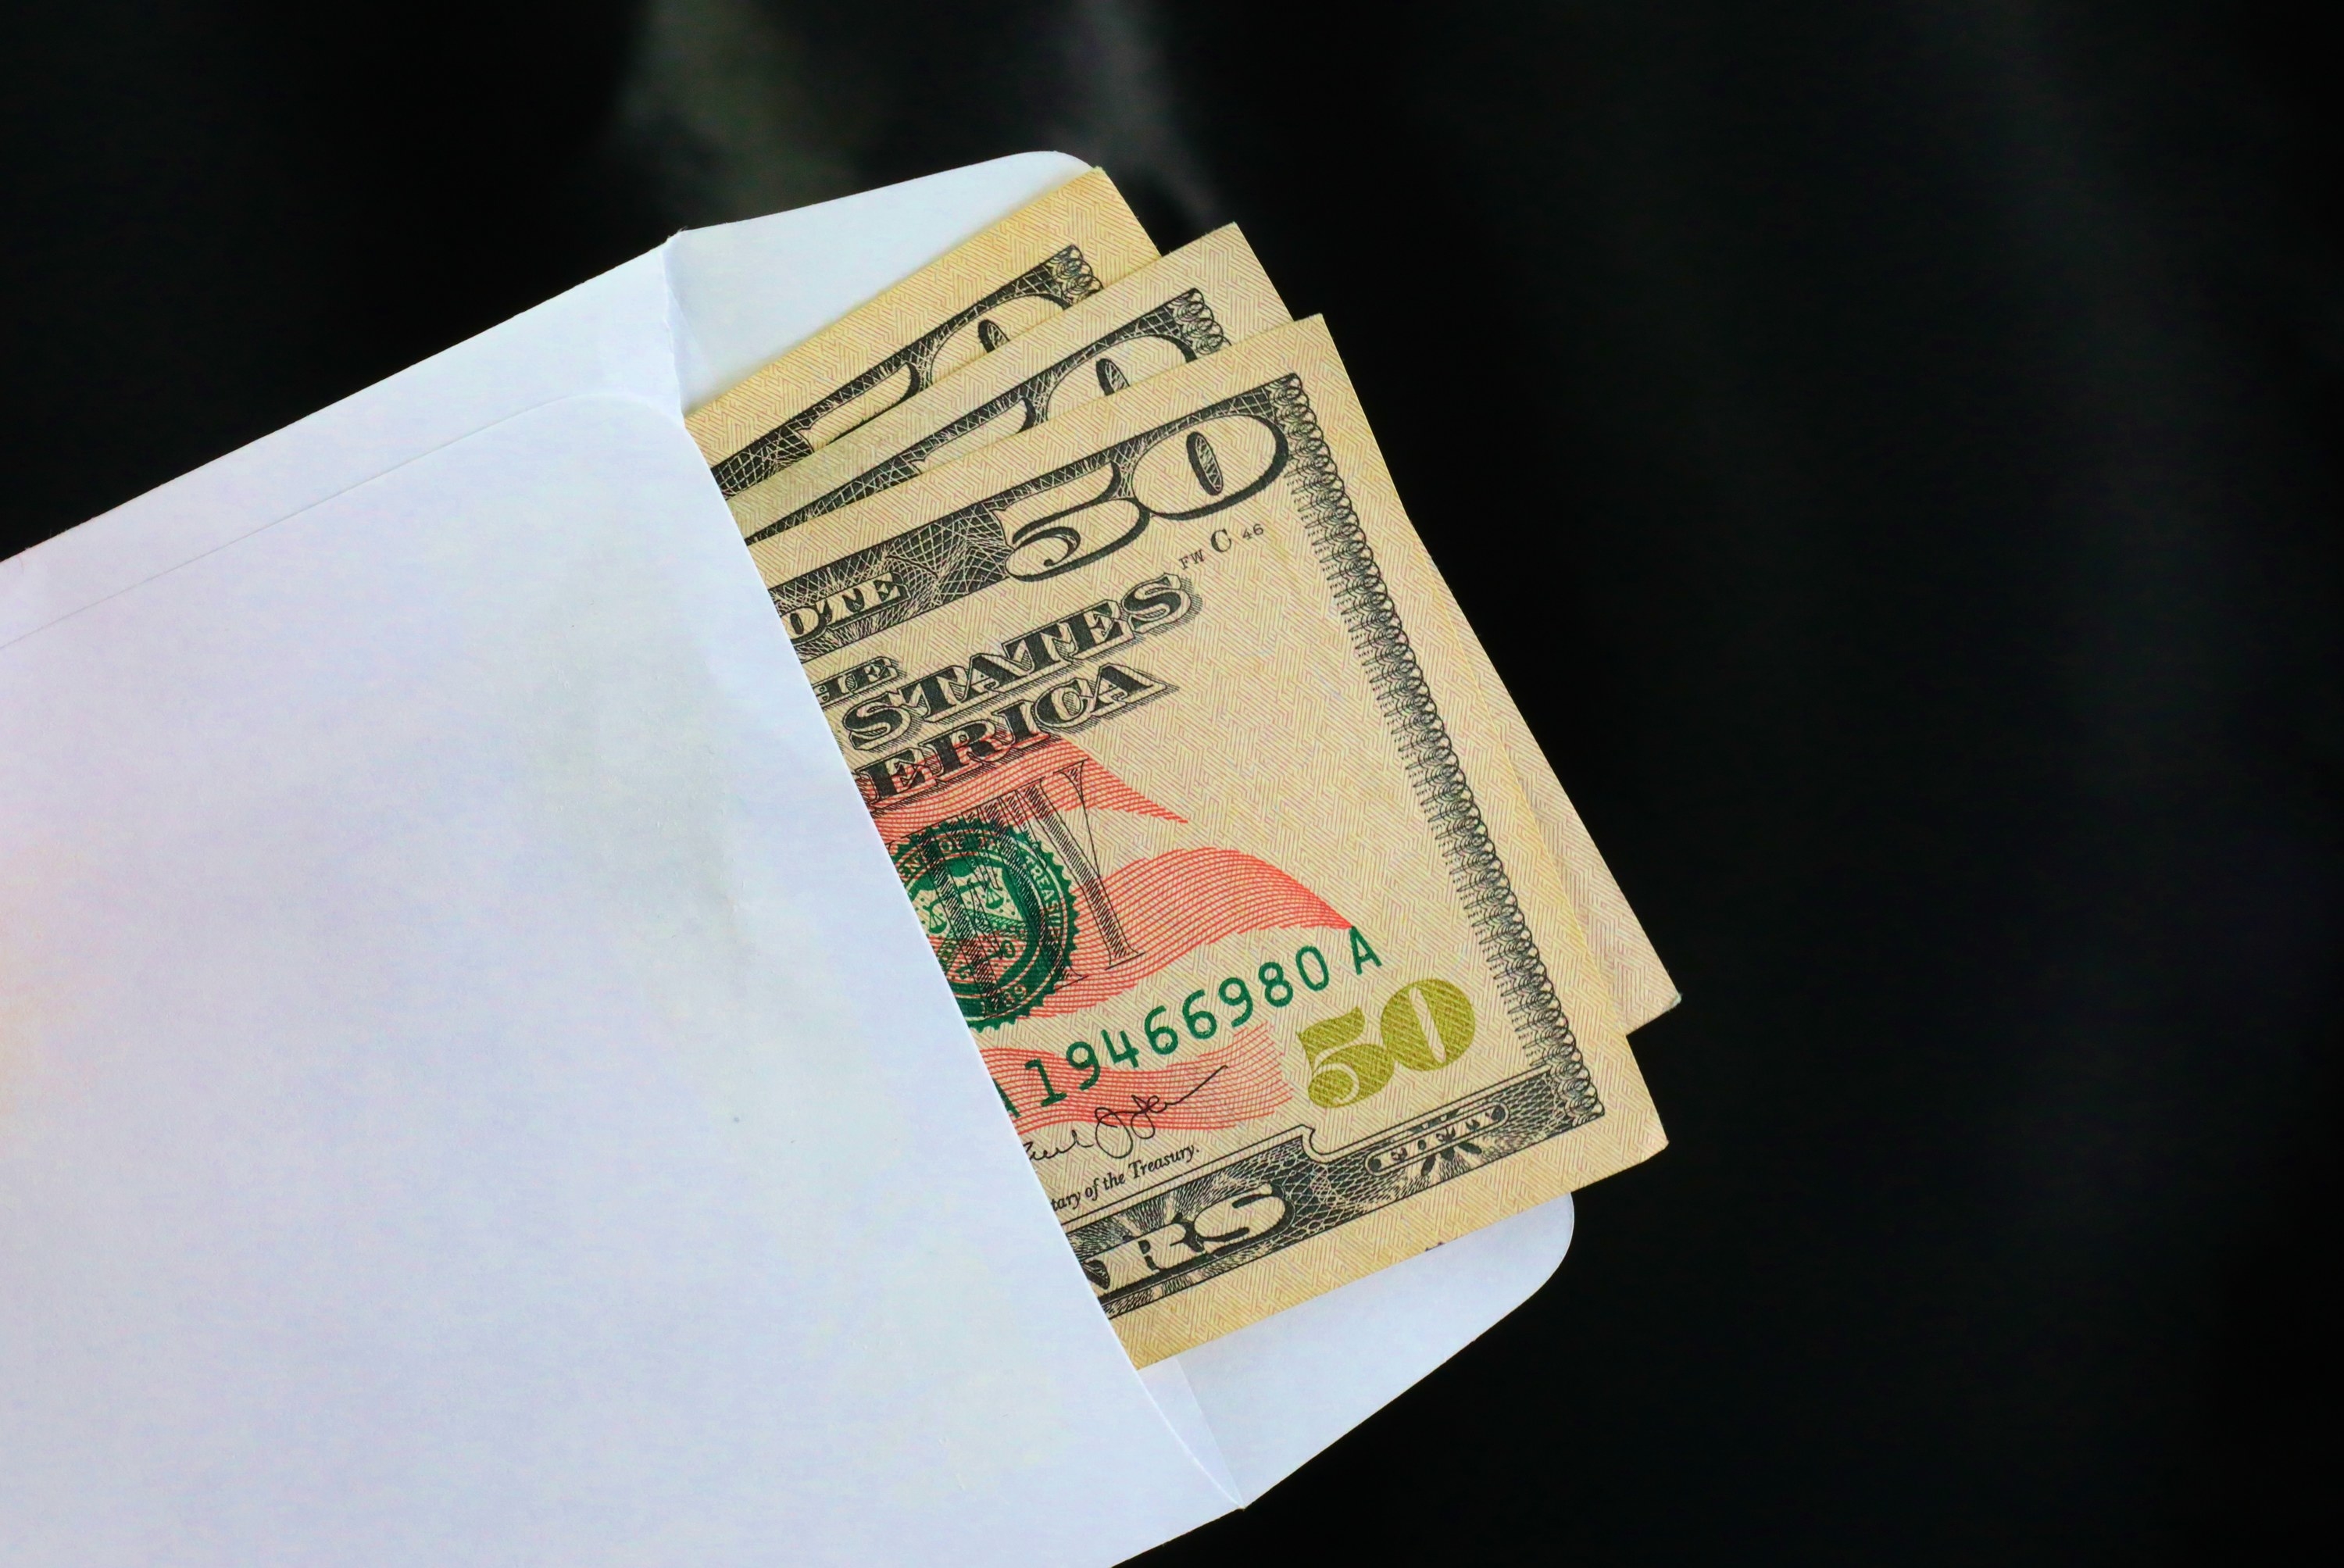 Three $50 bills in a white envelope.